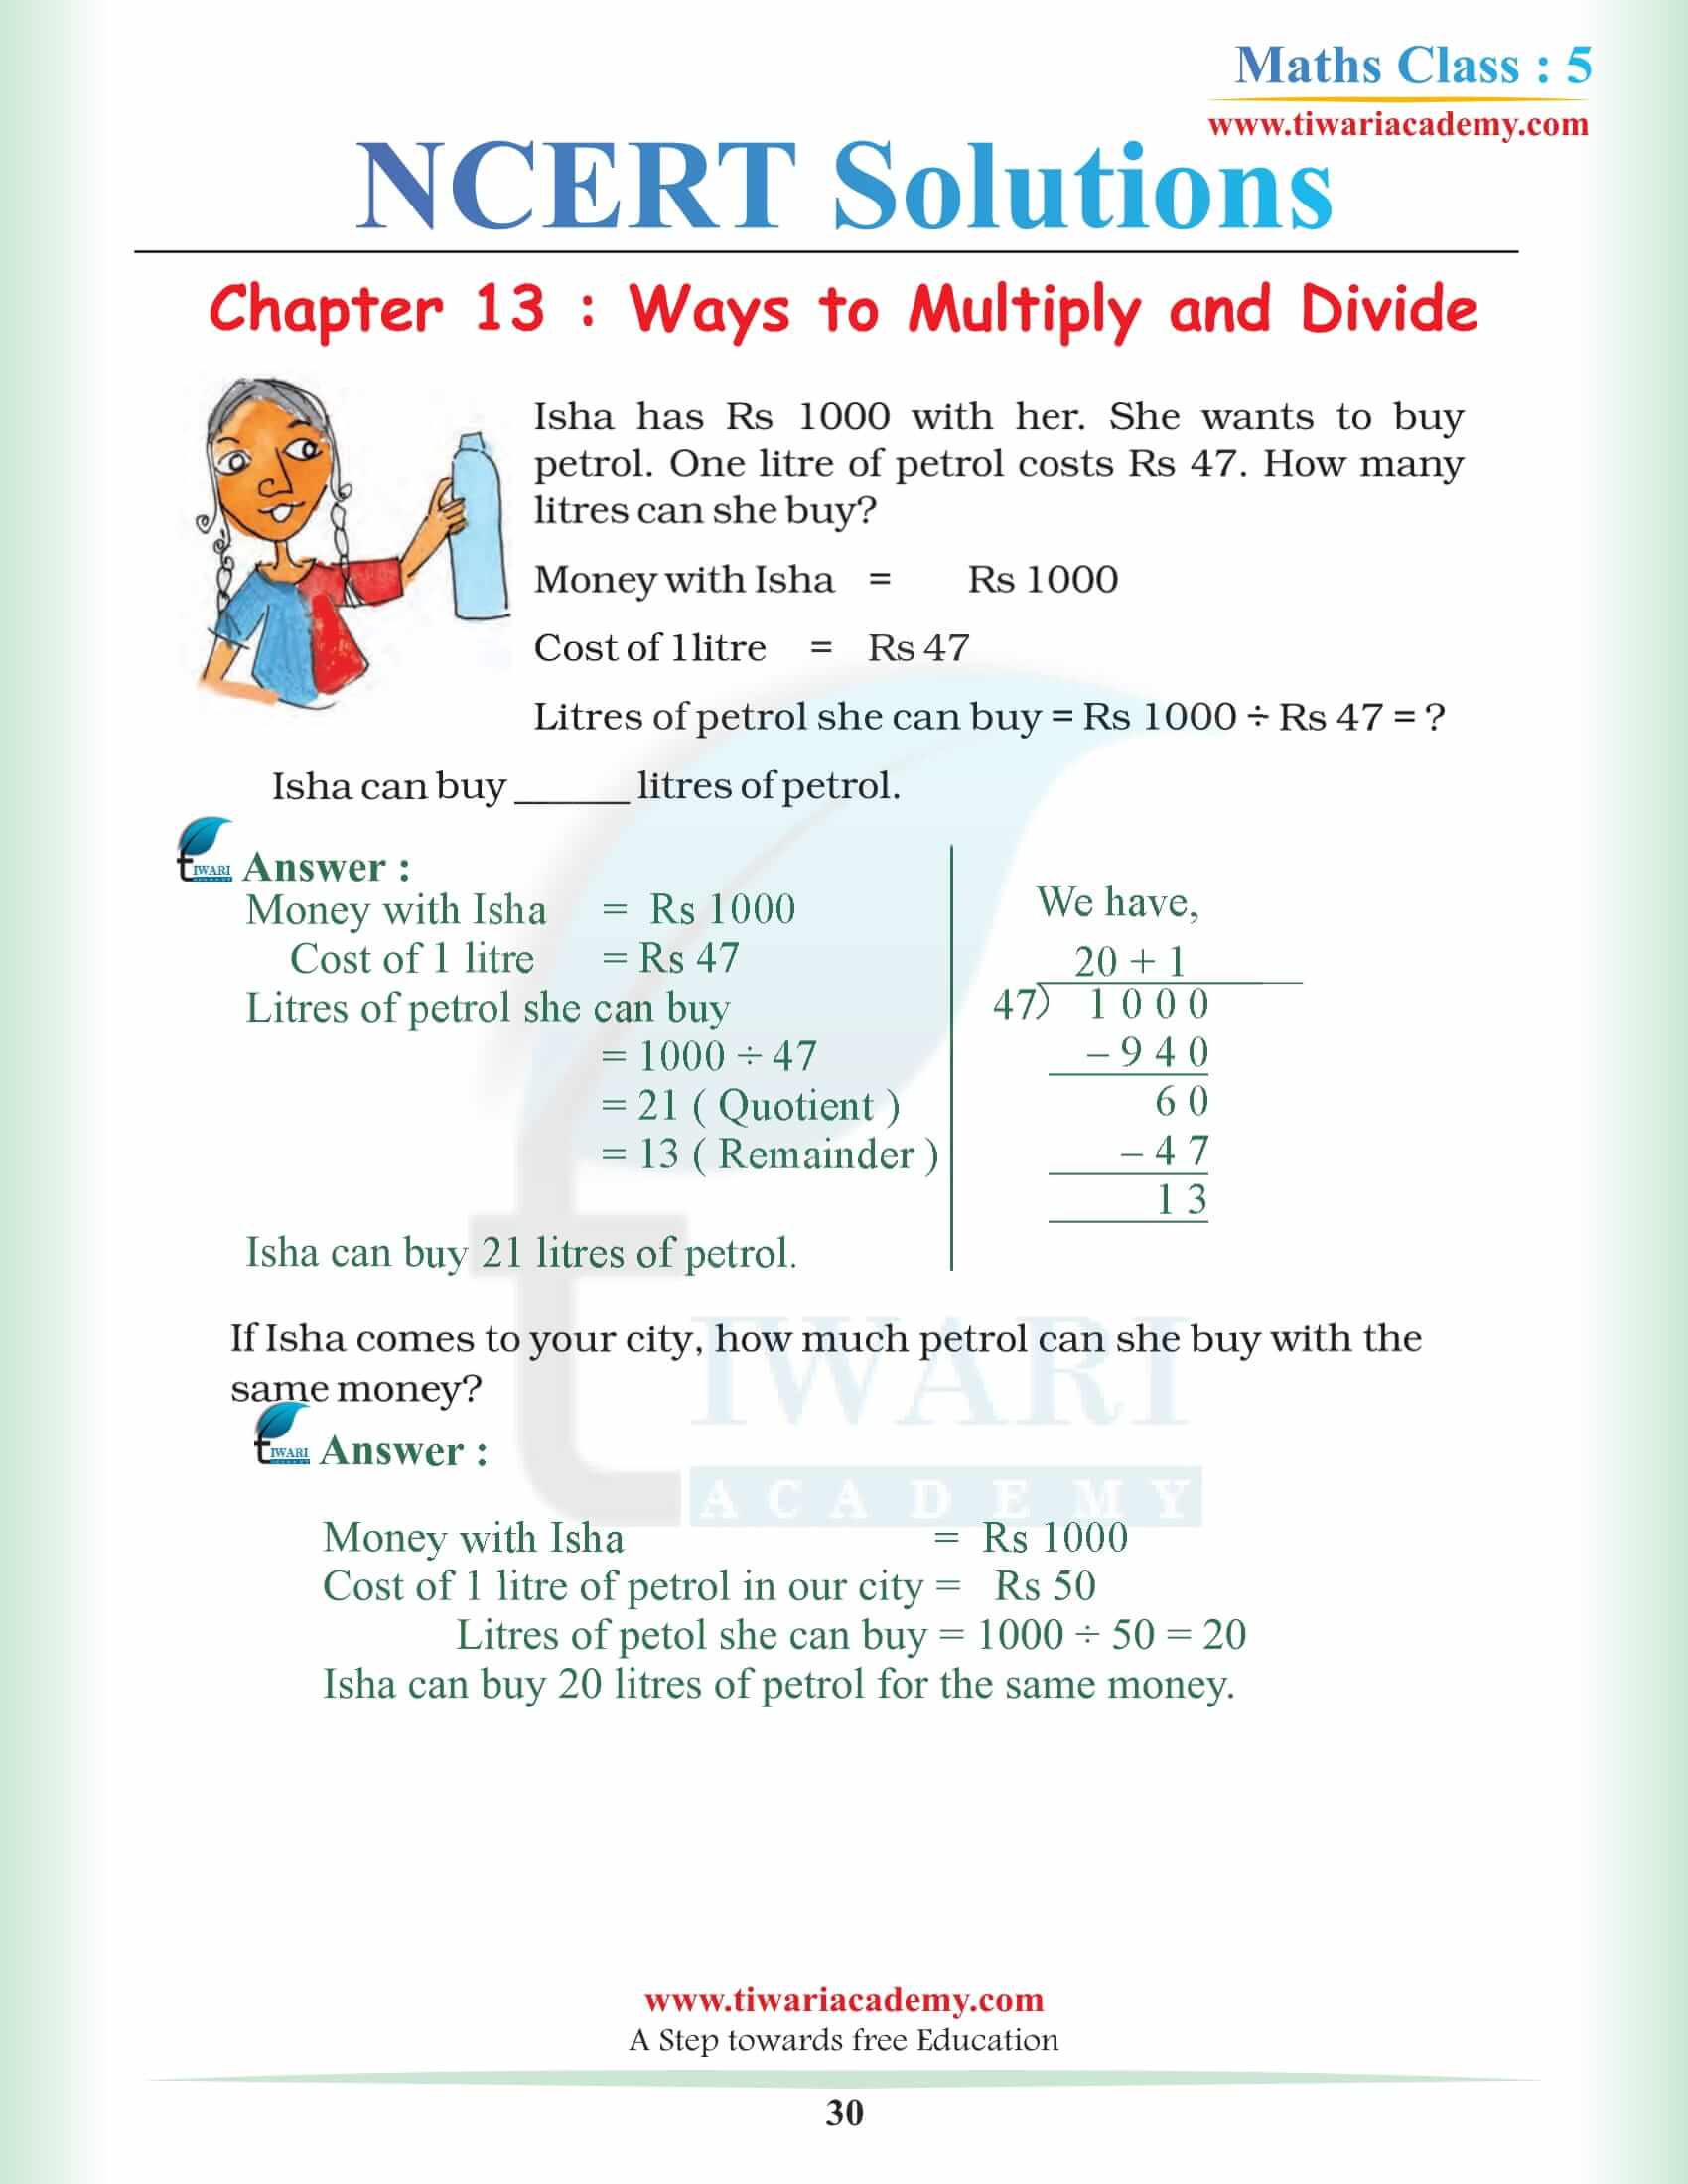 Maths 5th Class Chapter 13 NCERT Solutions